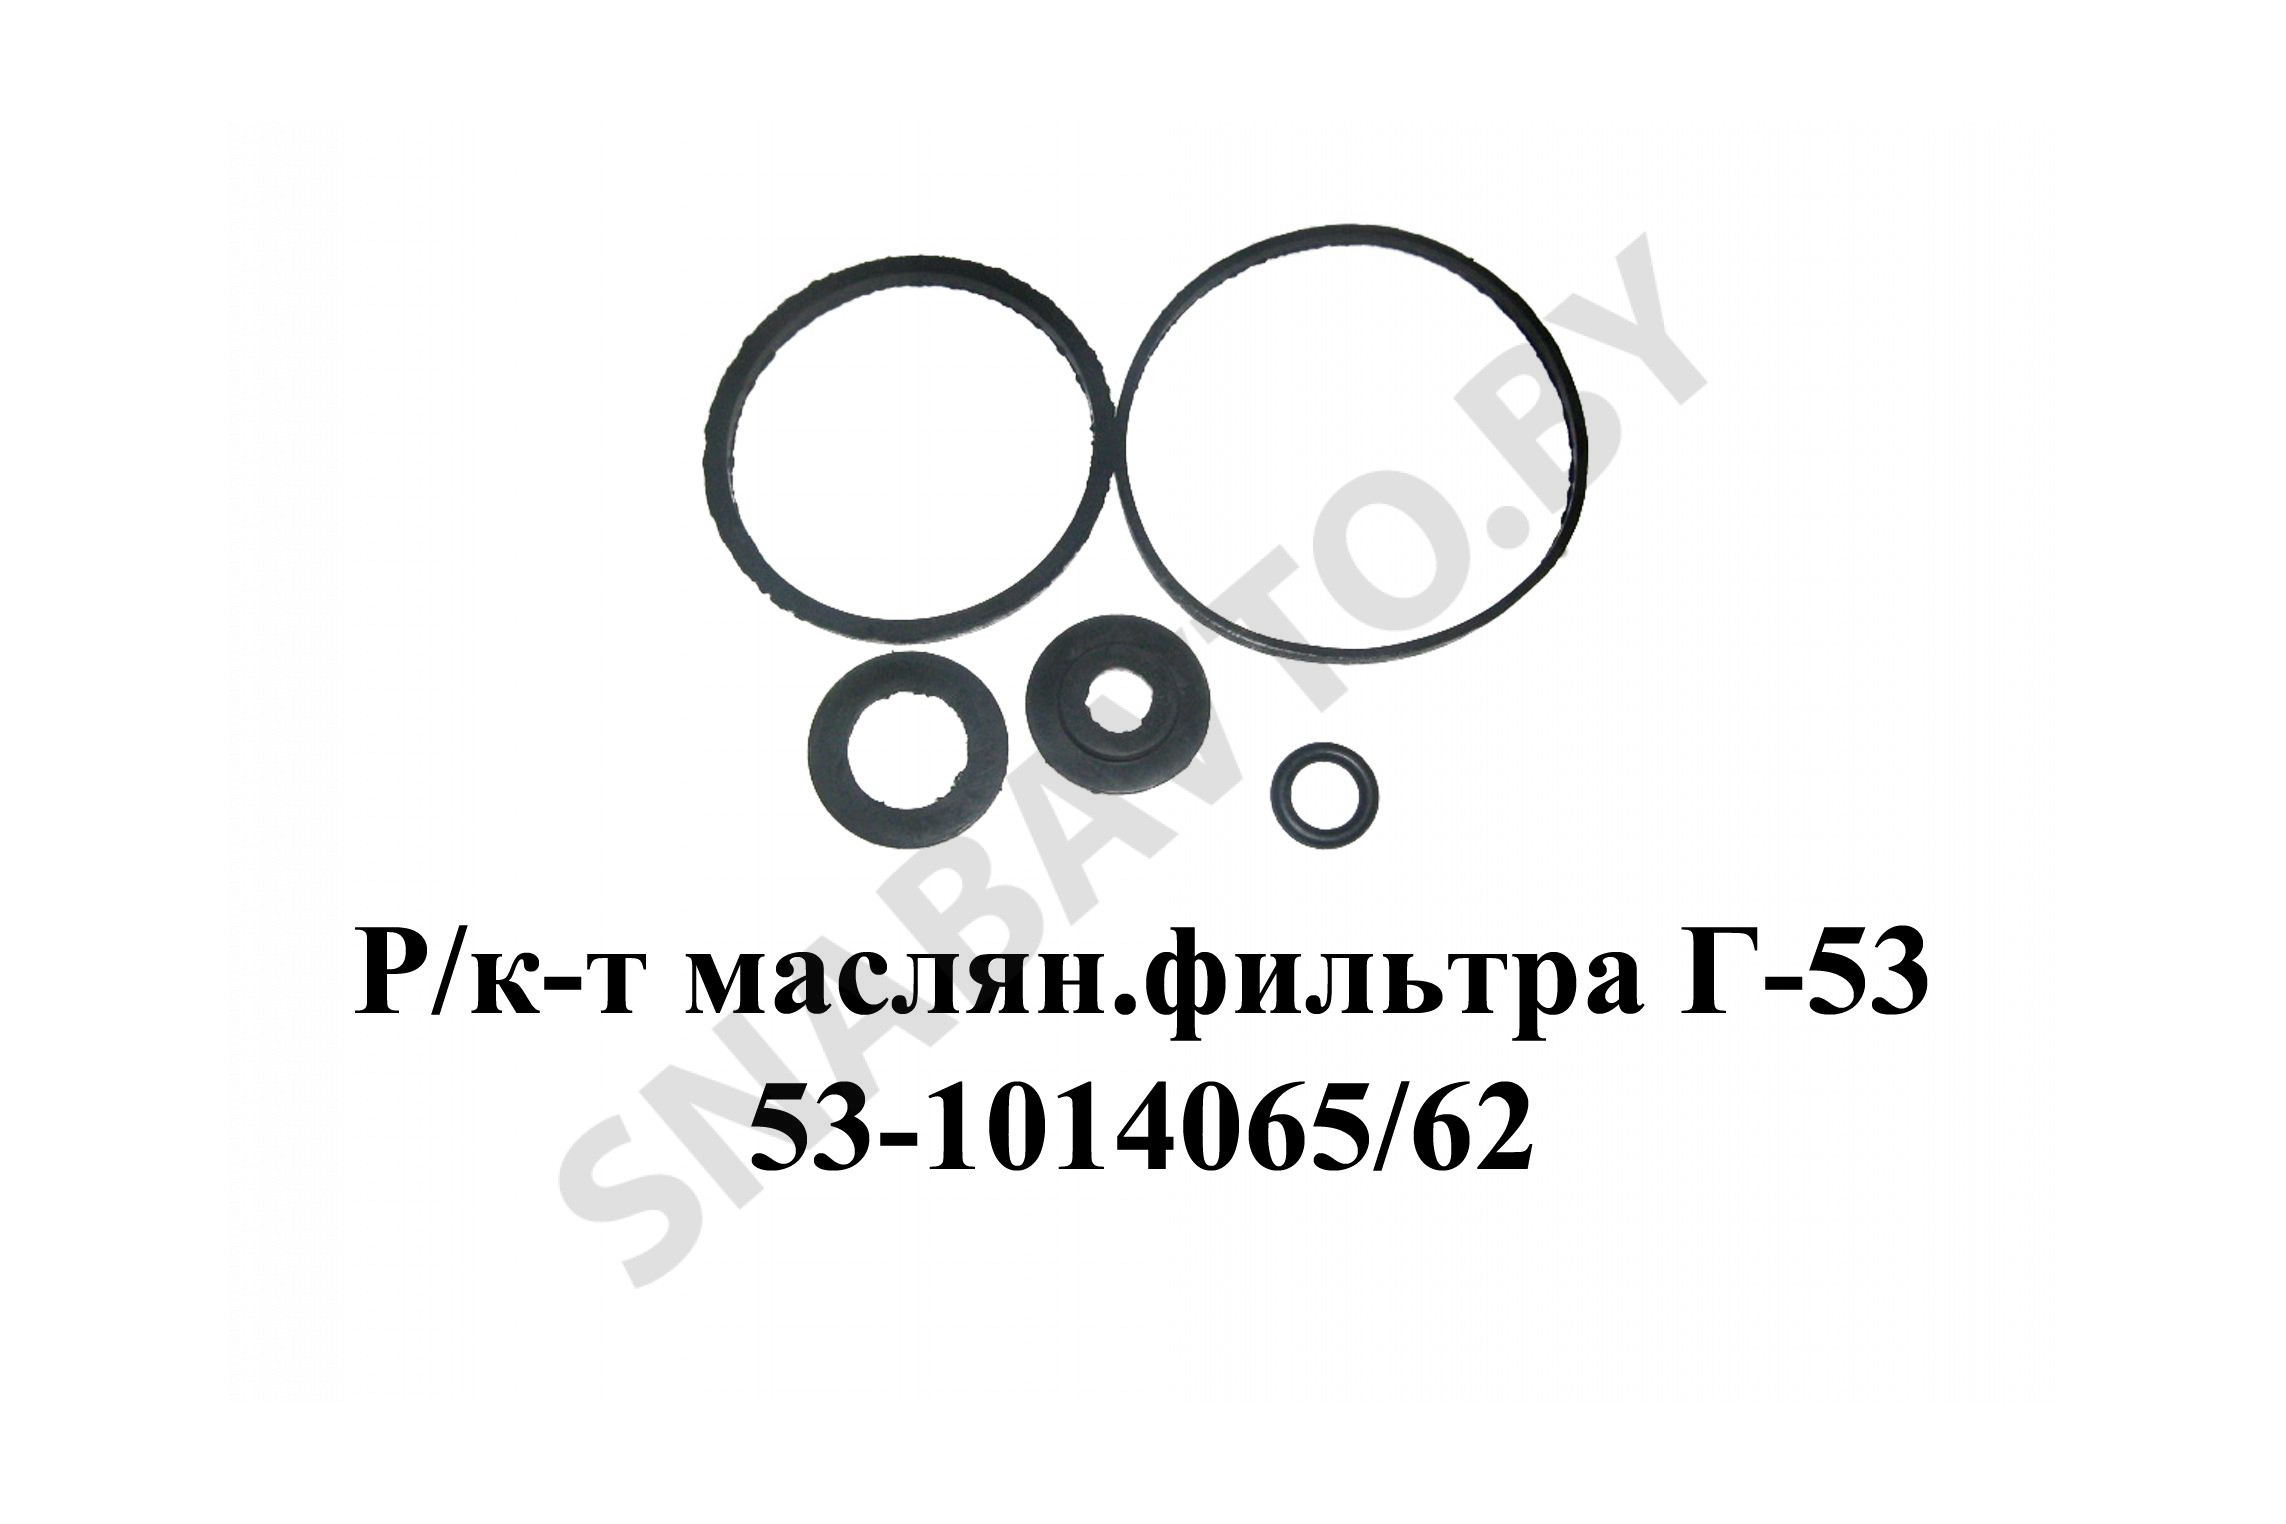 Ремкомплект масляного фильтра Г-53 53-1014065/62, ЗМЗ